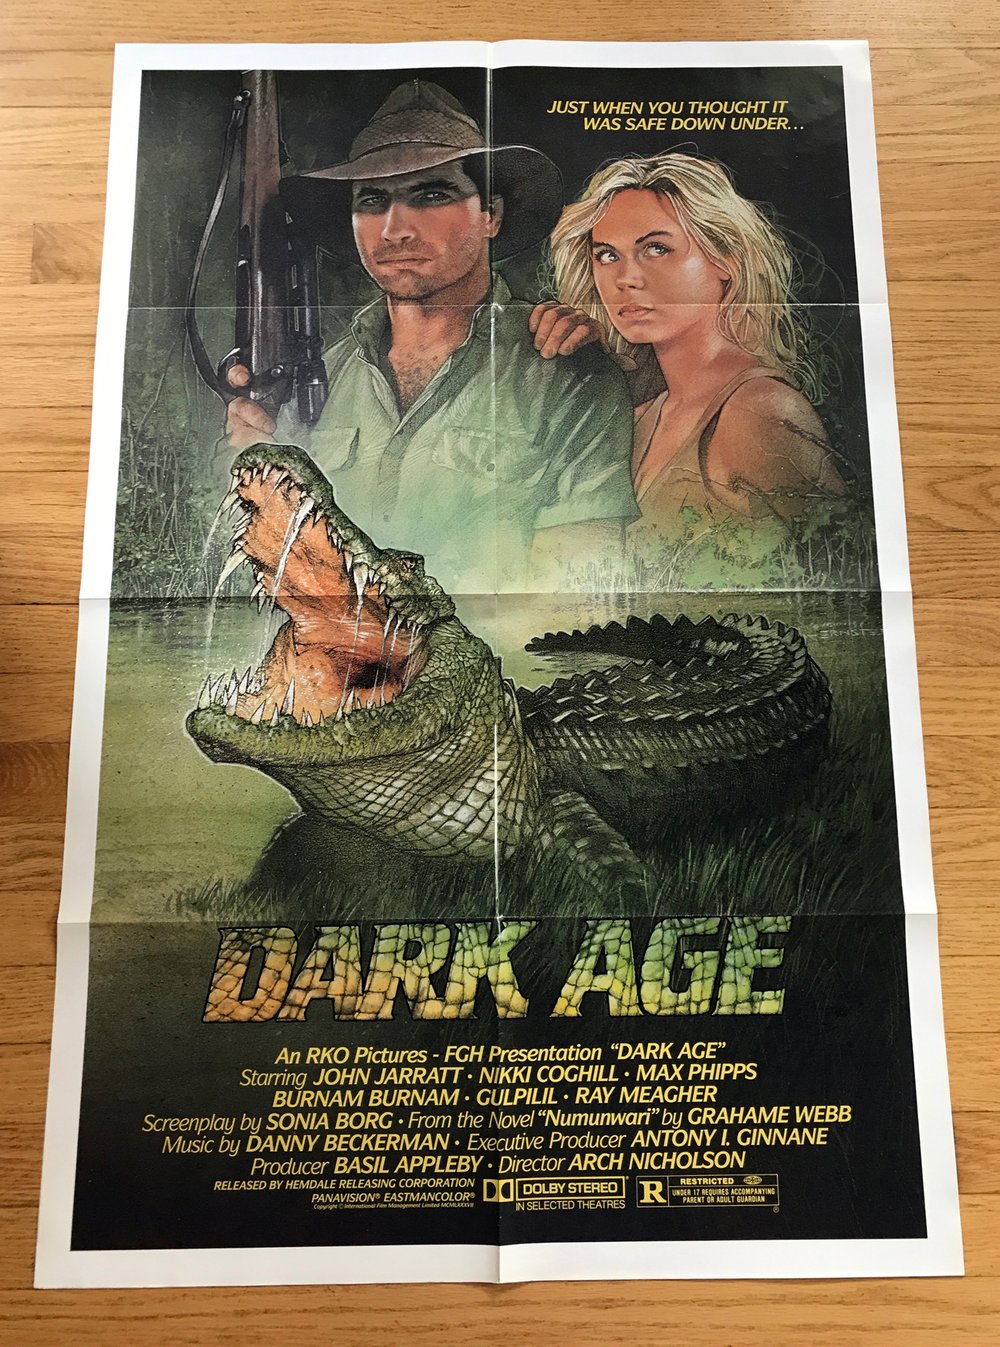 1987 DARK AGE Original U.S. One Sheet Movie Poster